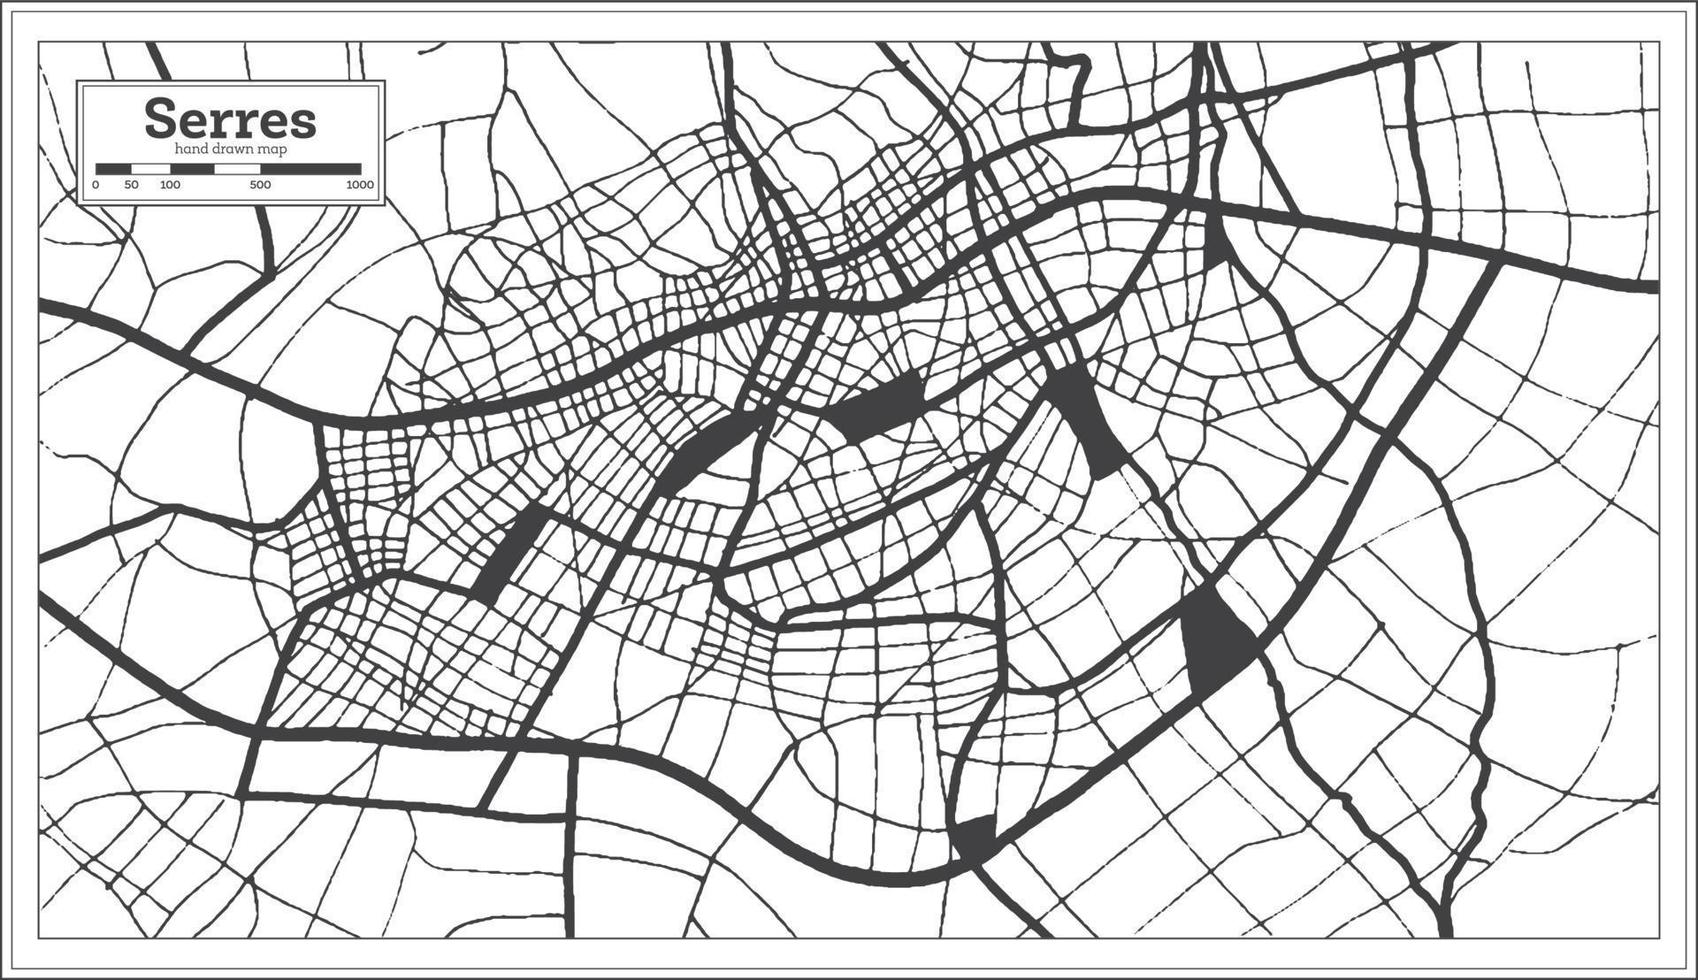 serres grekland stad Karta i svart och vit Färg i retro stil. översikt Karta. vektor